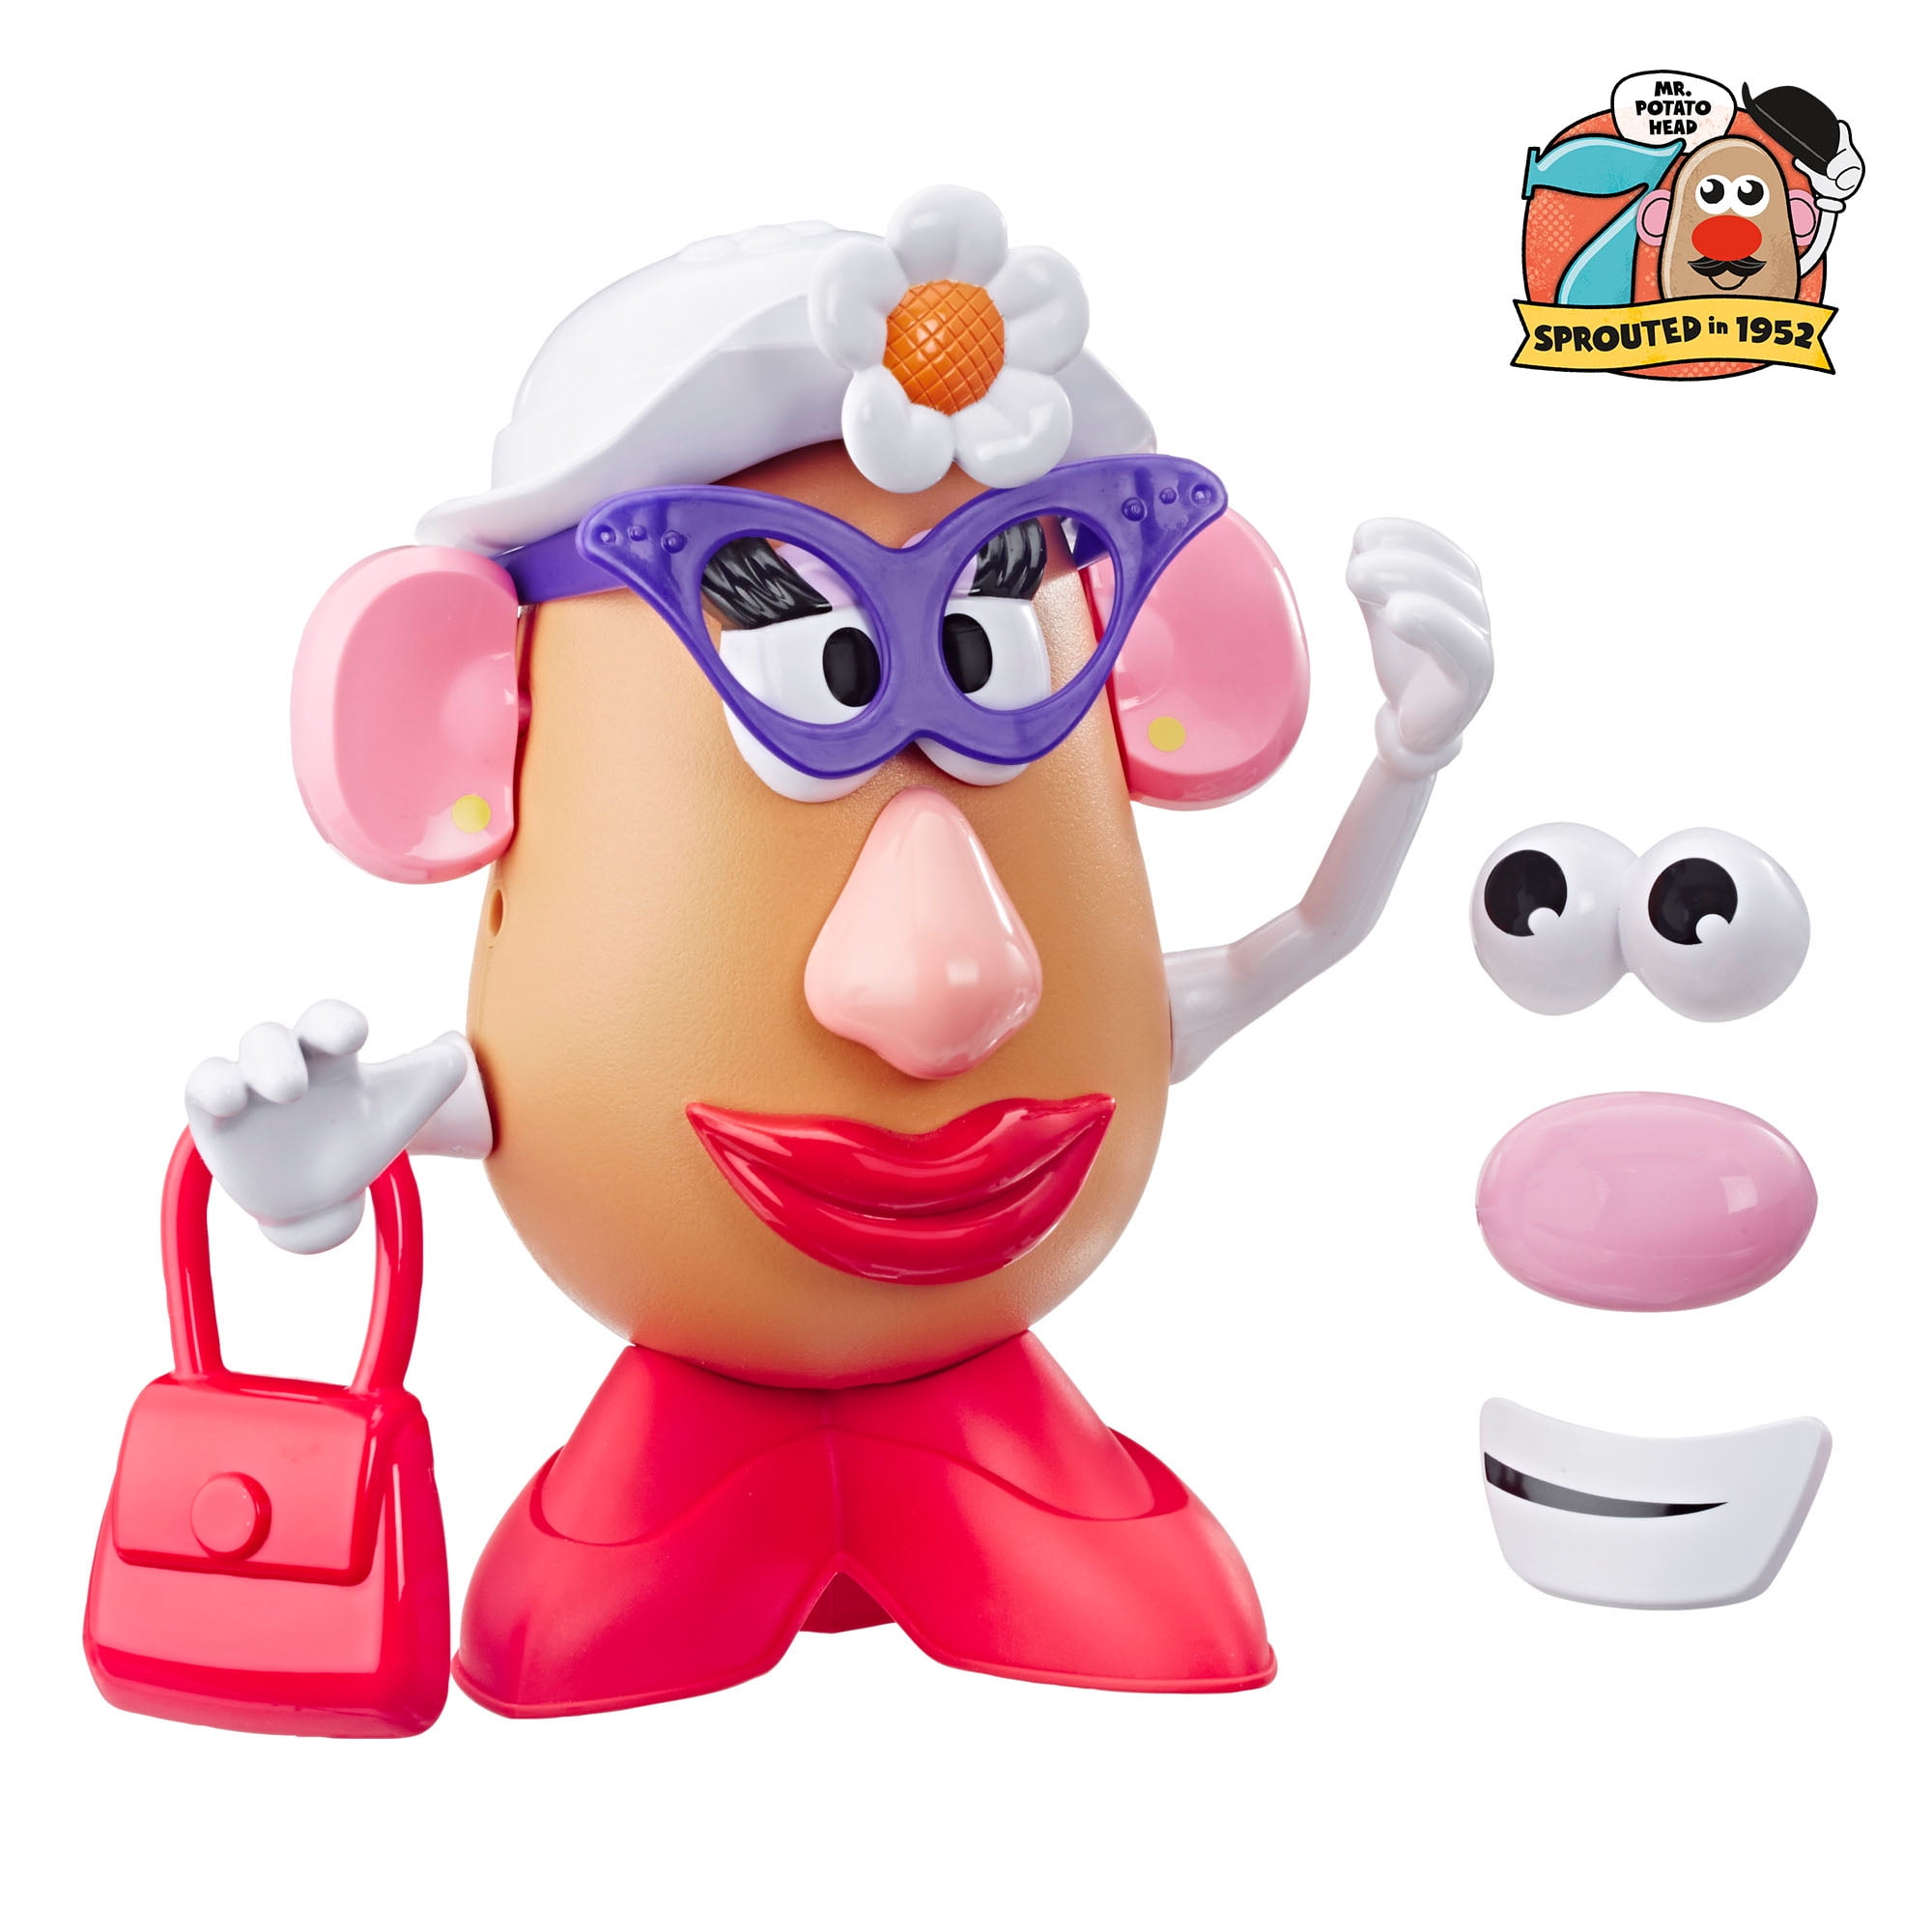 Mrs Playskool Friends Potato Head Figure for sale online 